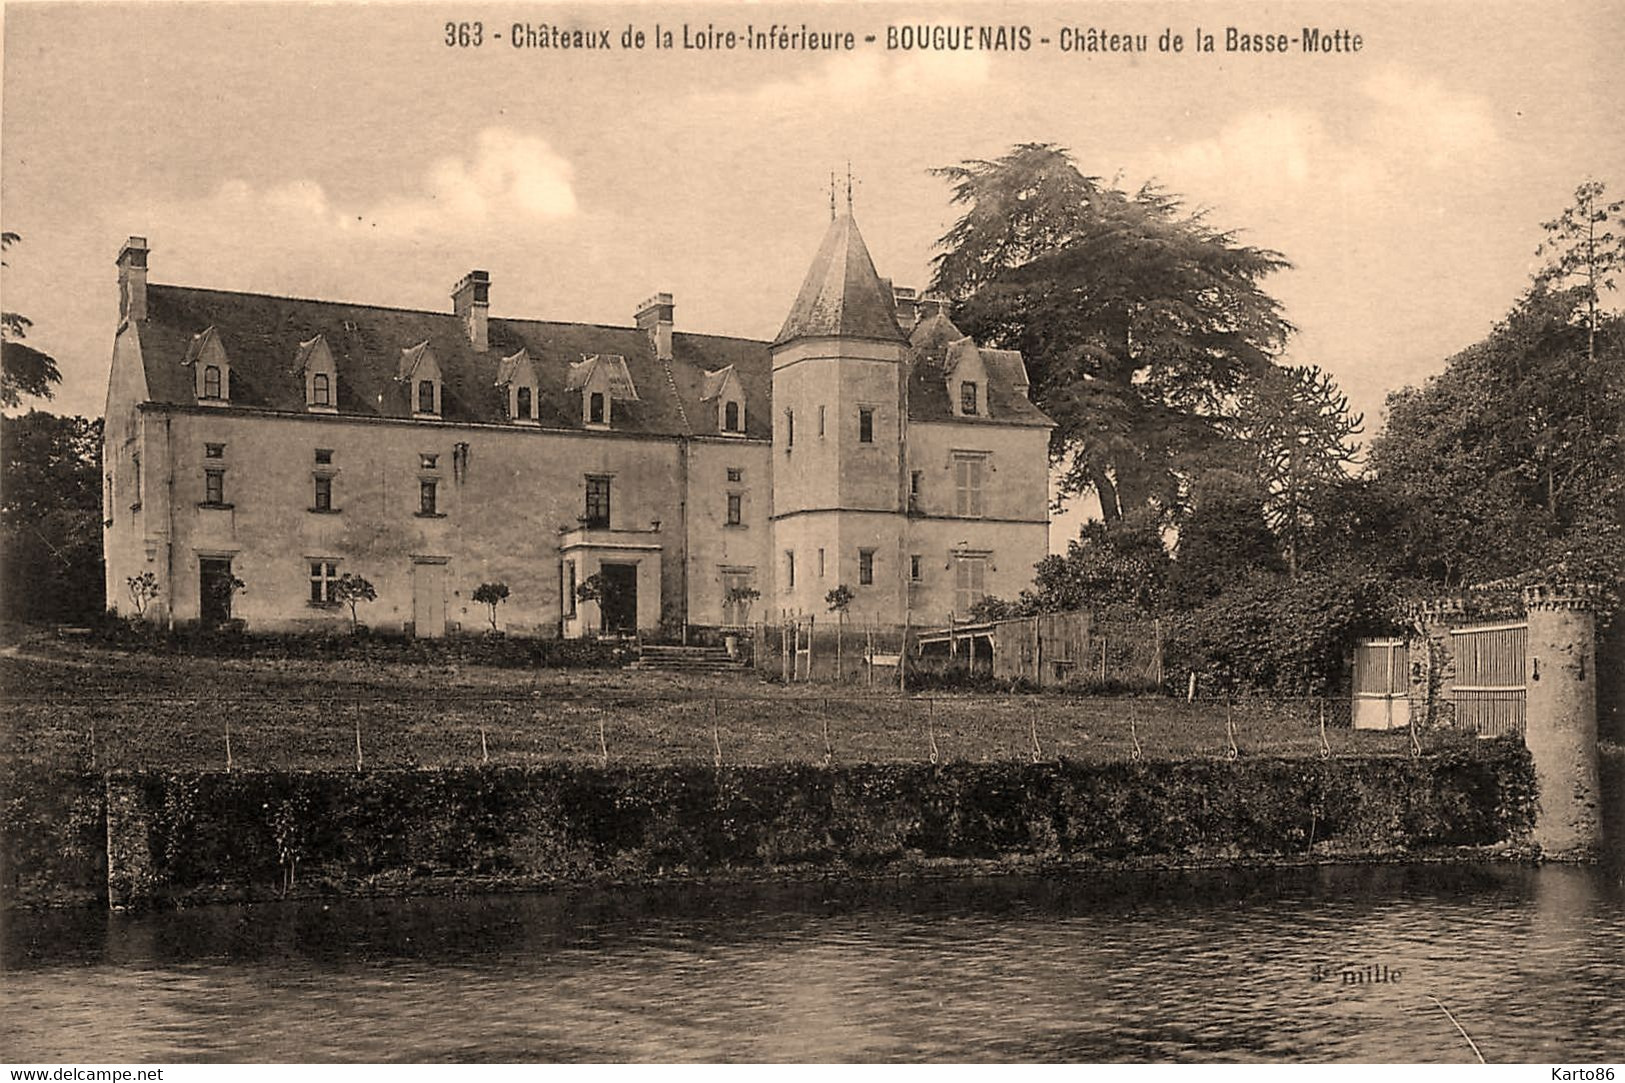 Bouguenais * Le Château De La Basse Motte * Châteaux De La Loire Inférieure N°363 - Bouguenais